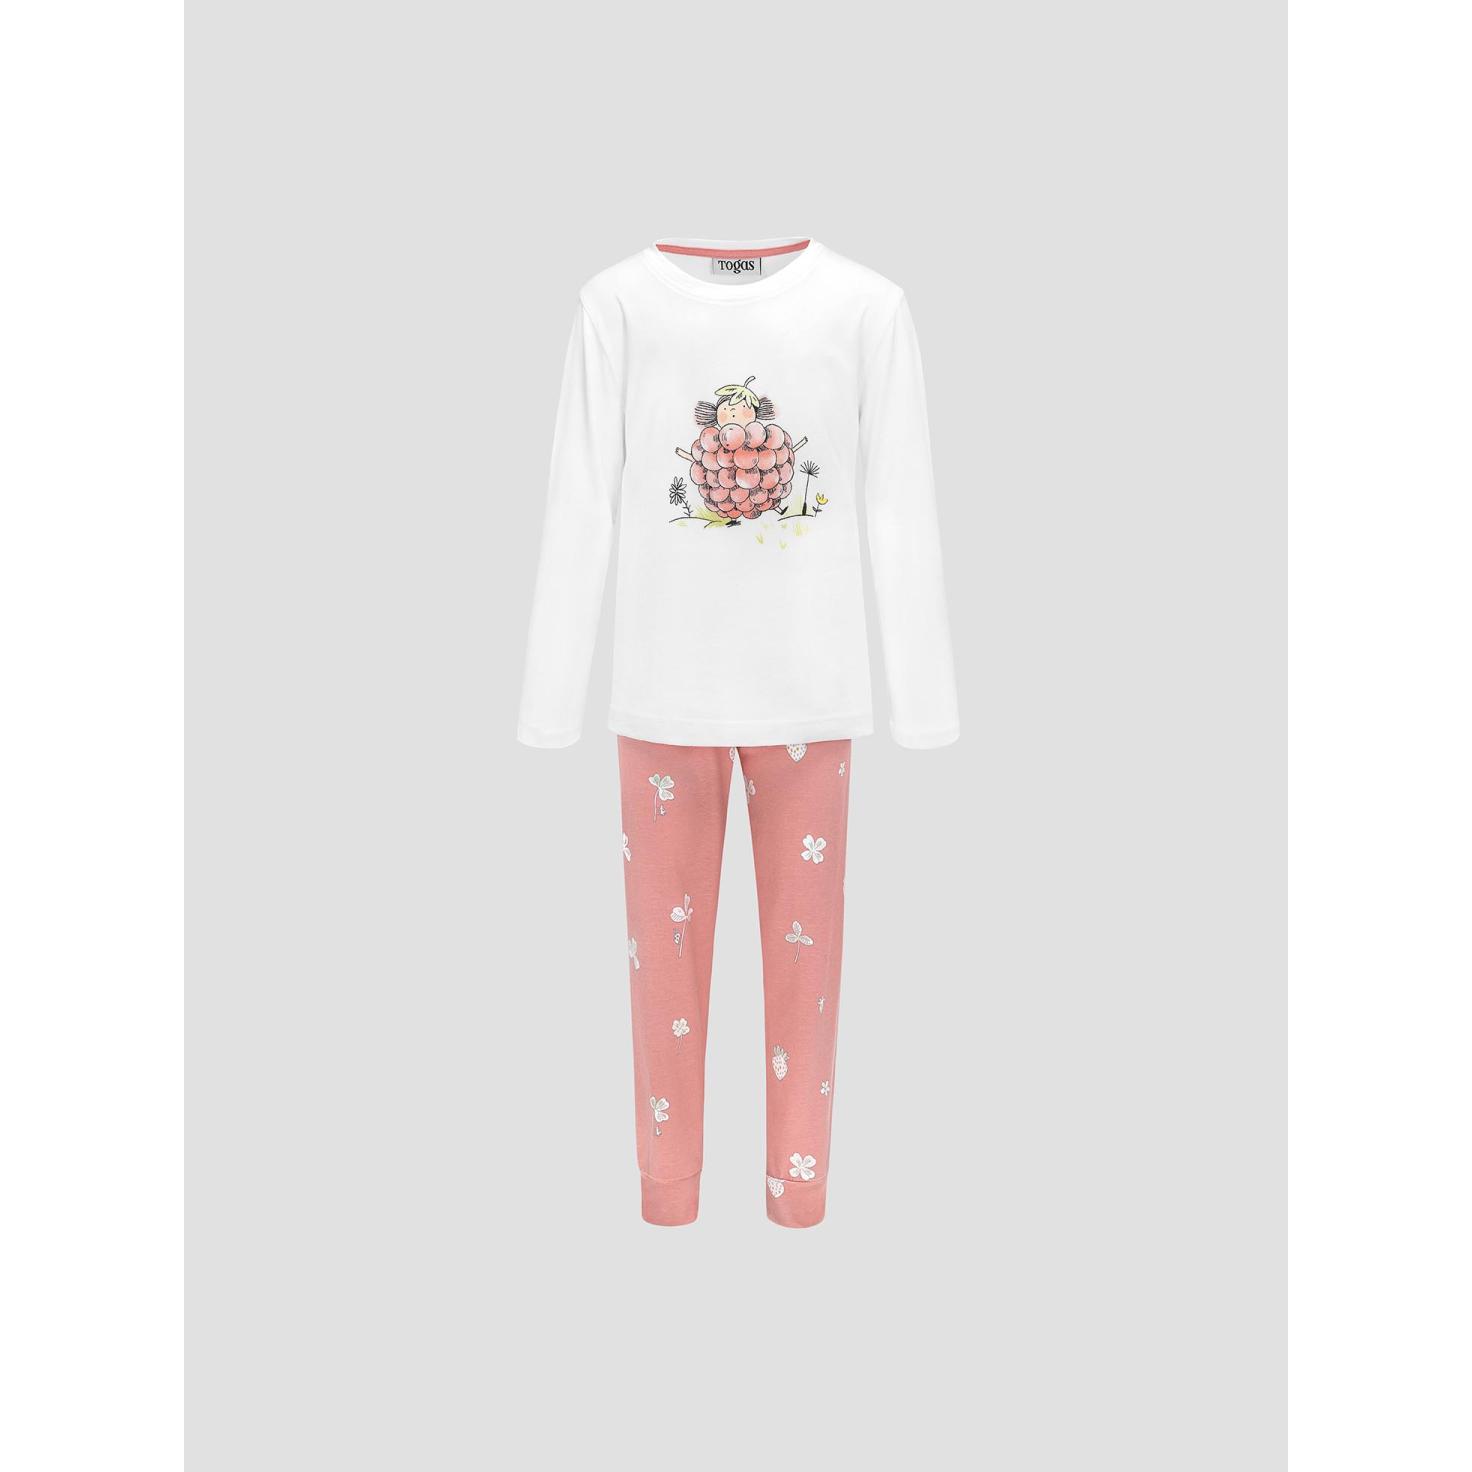 Пижама для девочек Kids by togas Стробби бело-розовый 140-146 см пижама для девочек kids by togas стробби бело розовый 116 122 см